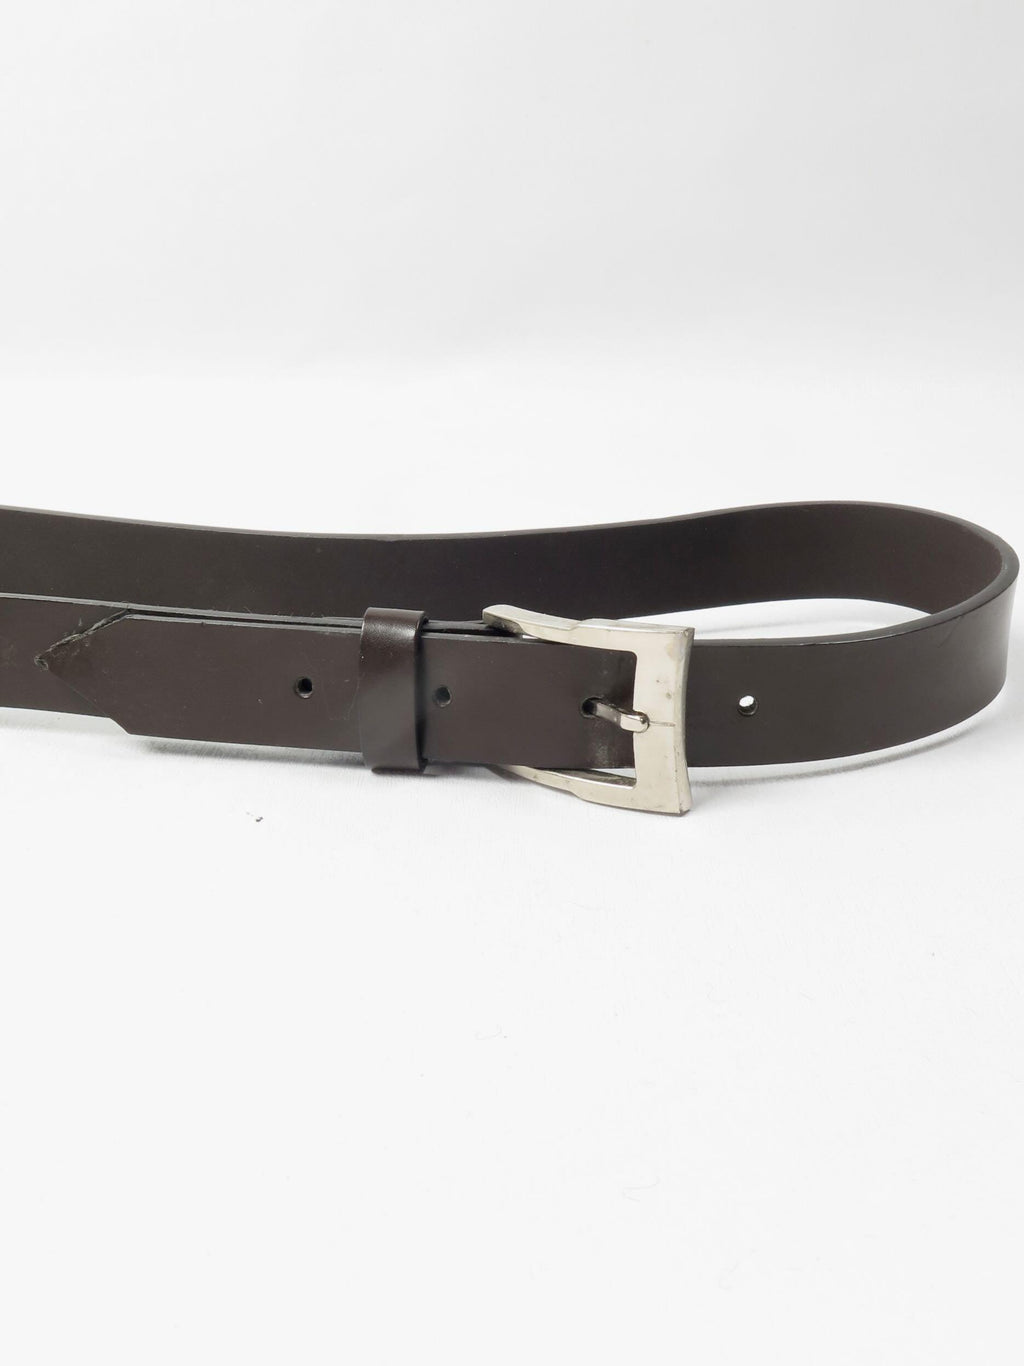 Brown Leather Vintage Belt 30-32 W - The Harlequin